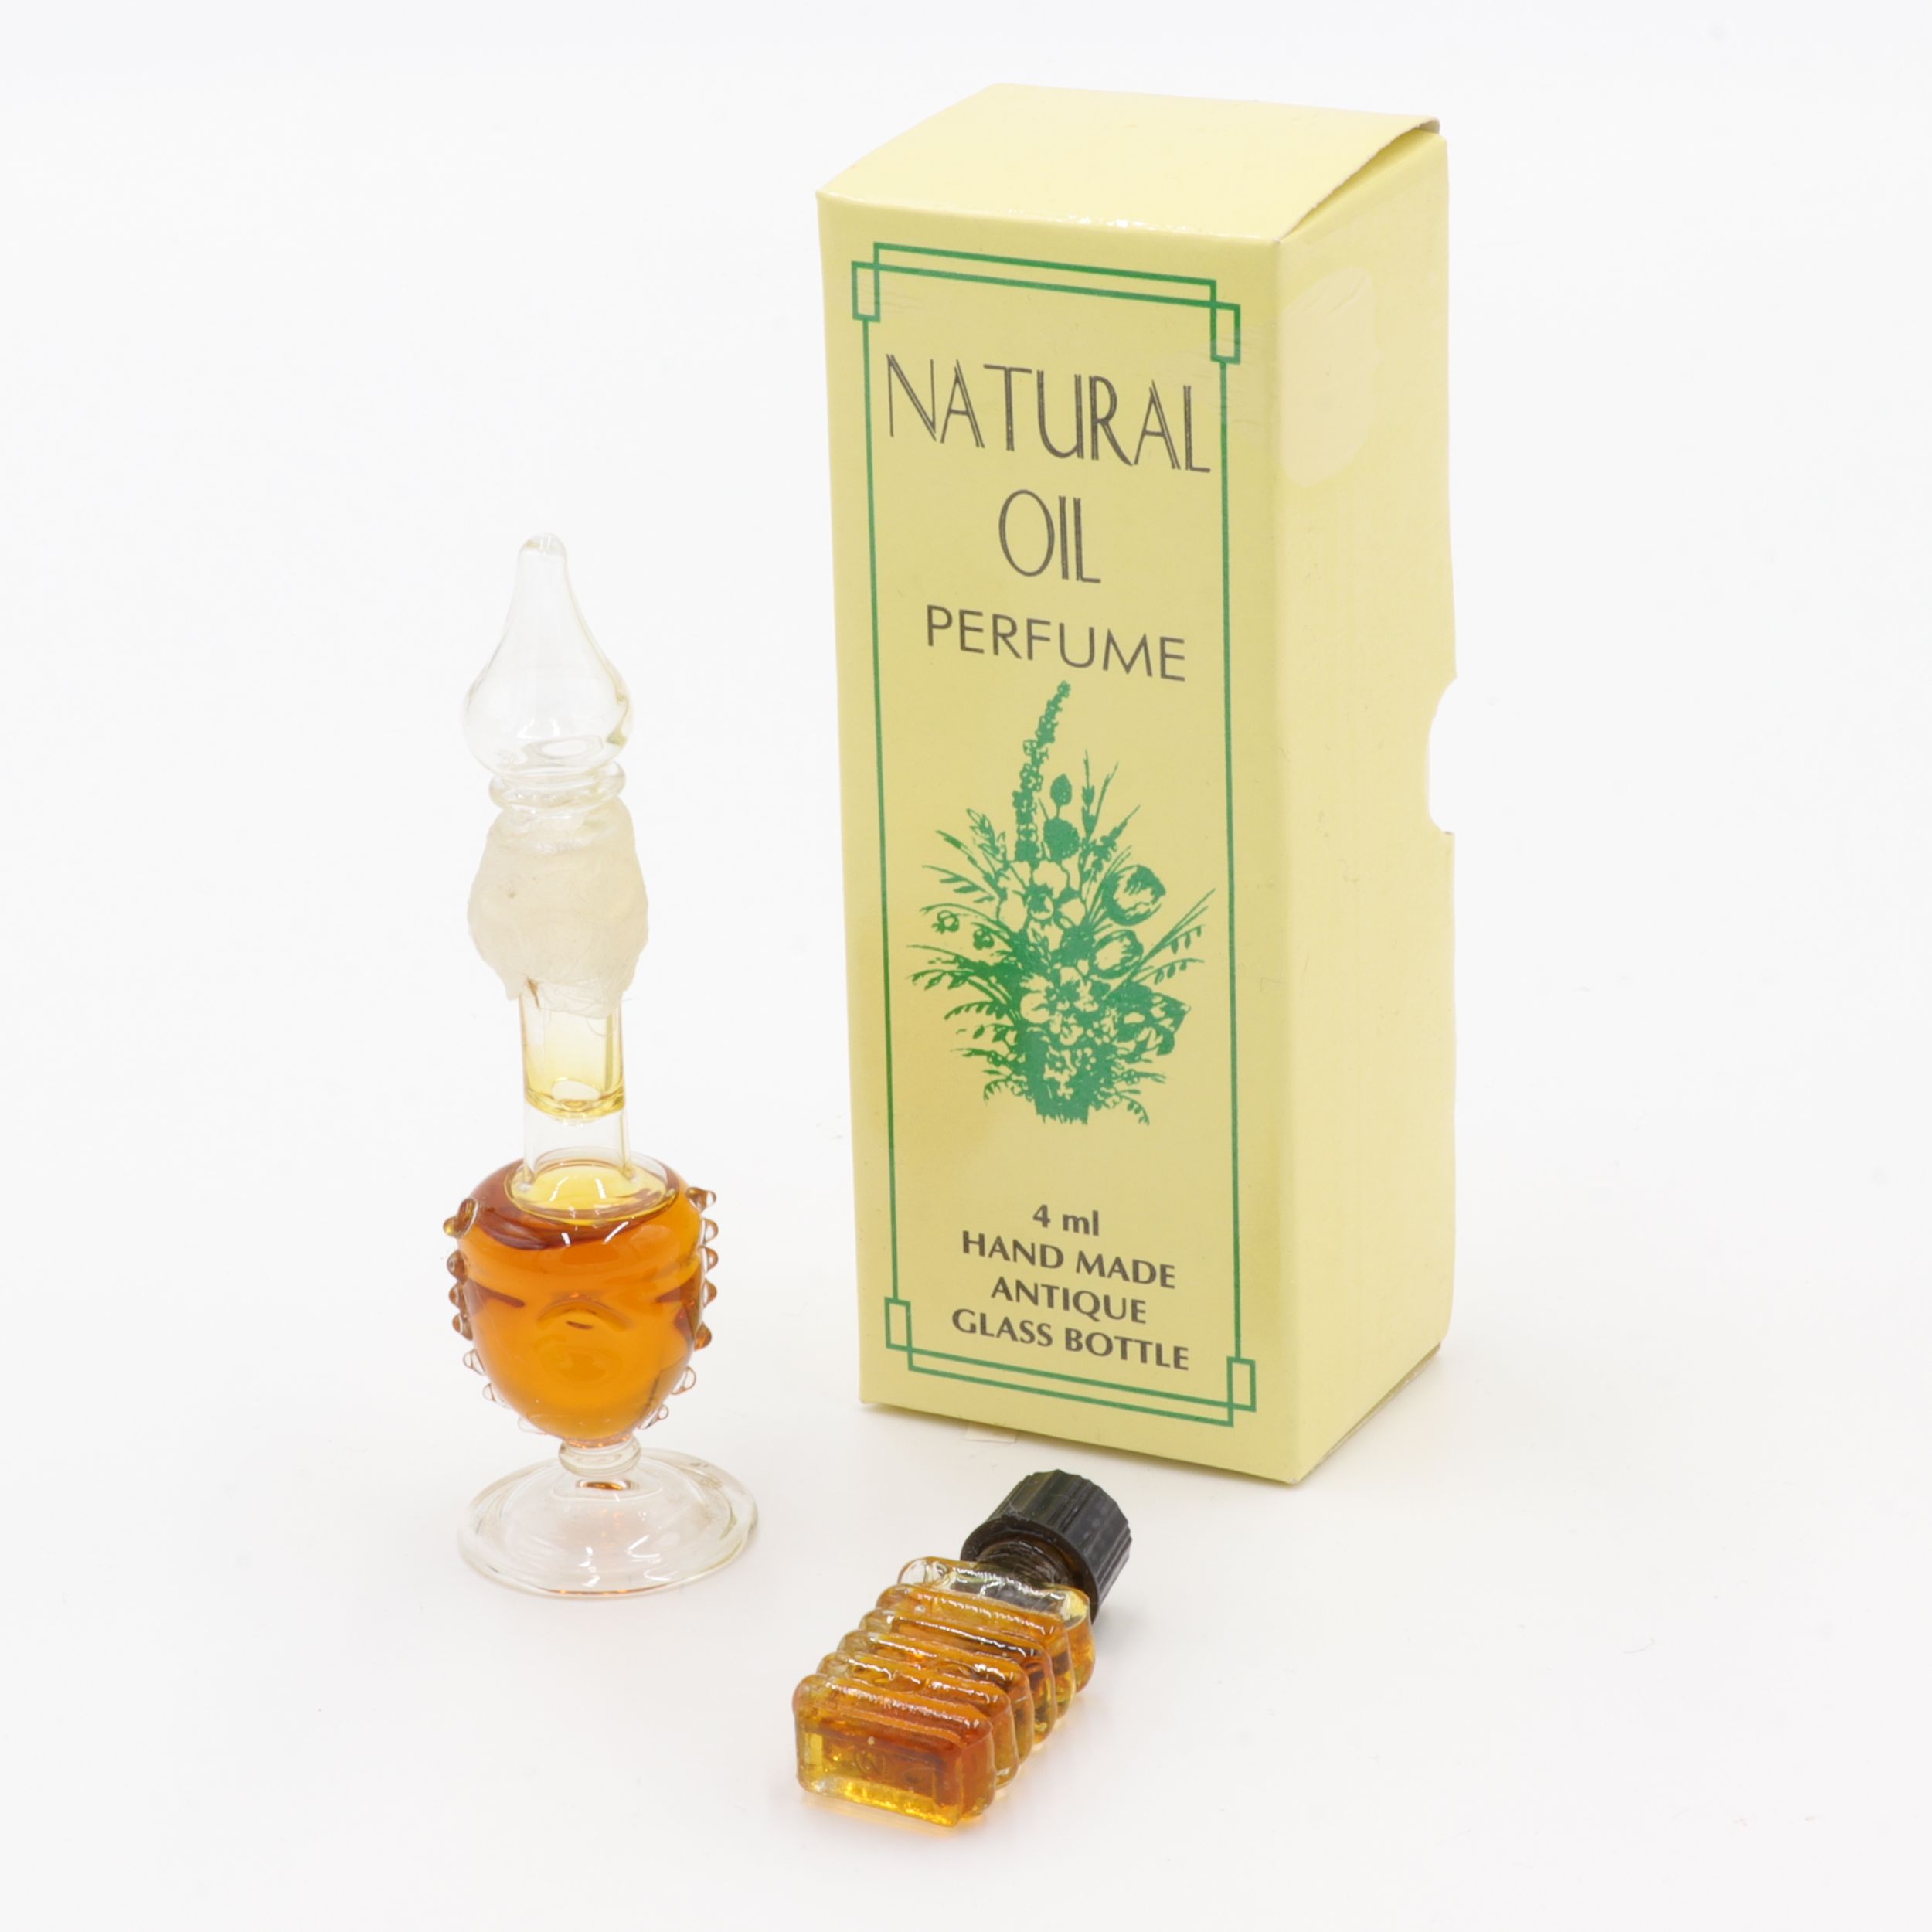 Natürliches Parfüm Öl - Antik-Flakon - Amber - feiner Duft wie eine Reise nach Indien - aus feinsten indischen Zuten - in handgemachtem Flakon